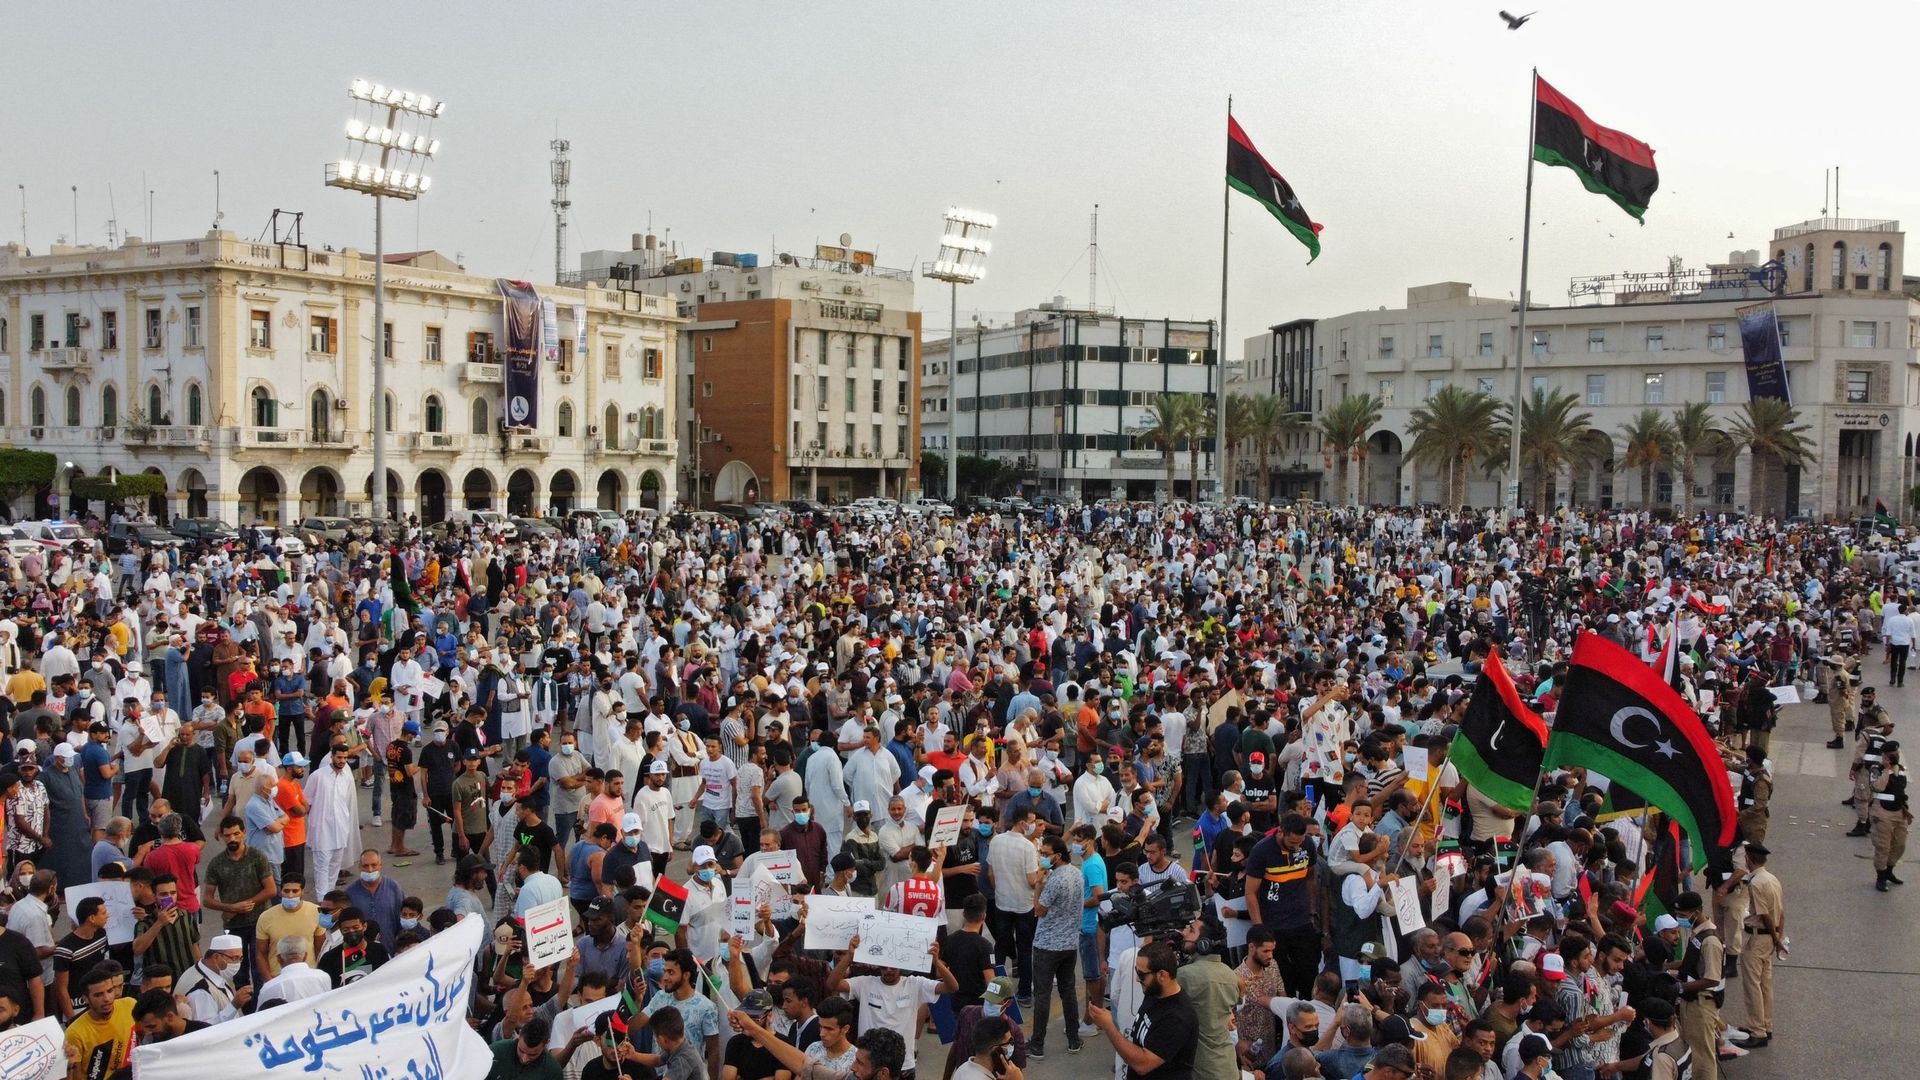 Des milliers de personnes ont manifesté à Tripoli pour dénoncer une motion de censure votée par le Parlement libyen contre le gouvernement de transition, ce 24 septembre 2021